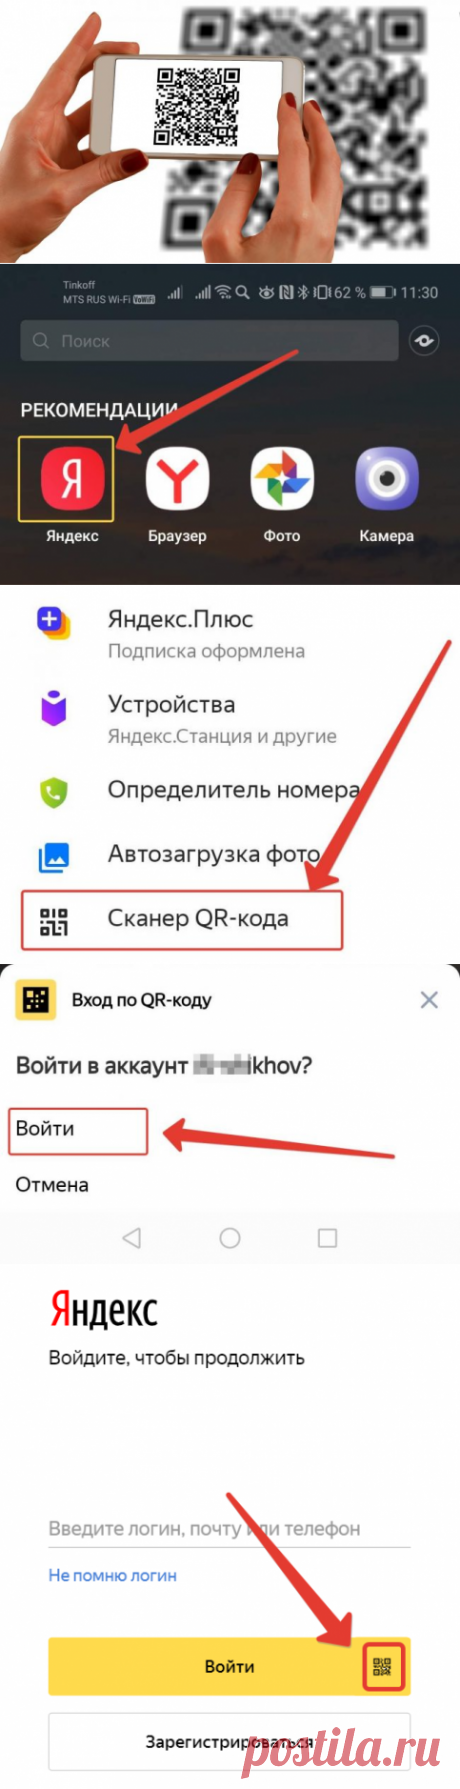 Как войти в Яндекс без пароля в любом браузере